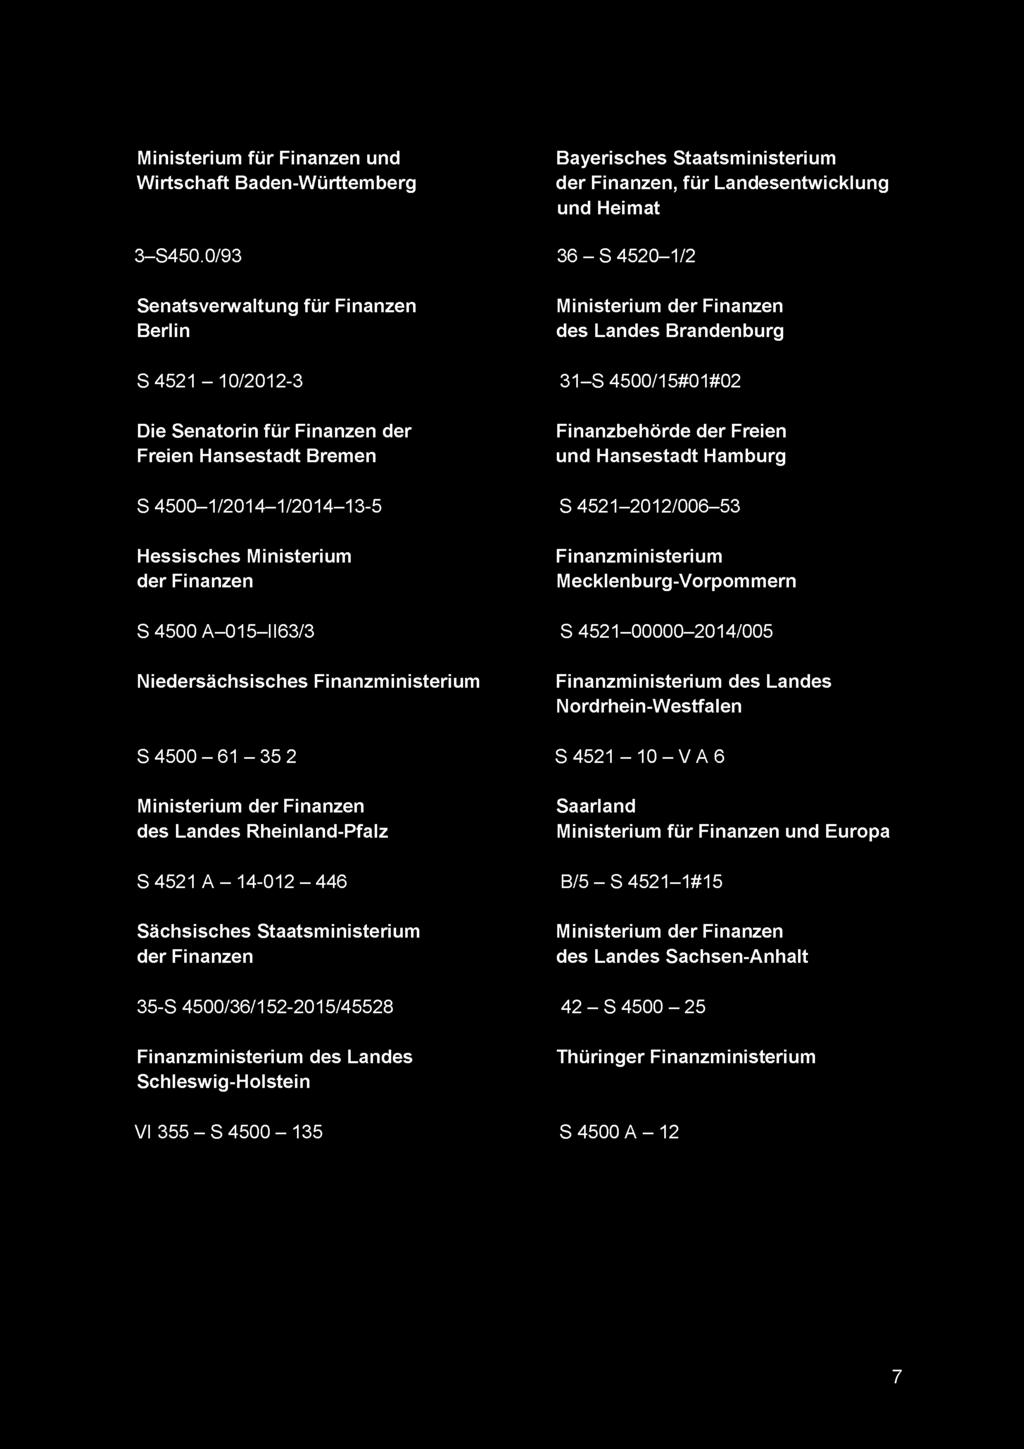 Finanzbehörde der Freien und Hansestadt Hamburg S 4500-1/2014-1/2014-13-5 S 4521-2012/006-53 Hessisches Ministerium der Finanzen Finanzministerium Mecklenburg-Vorpommern S4500 A-015-1163/3 S